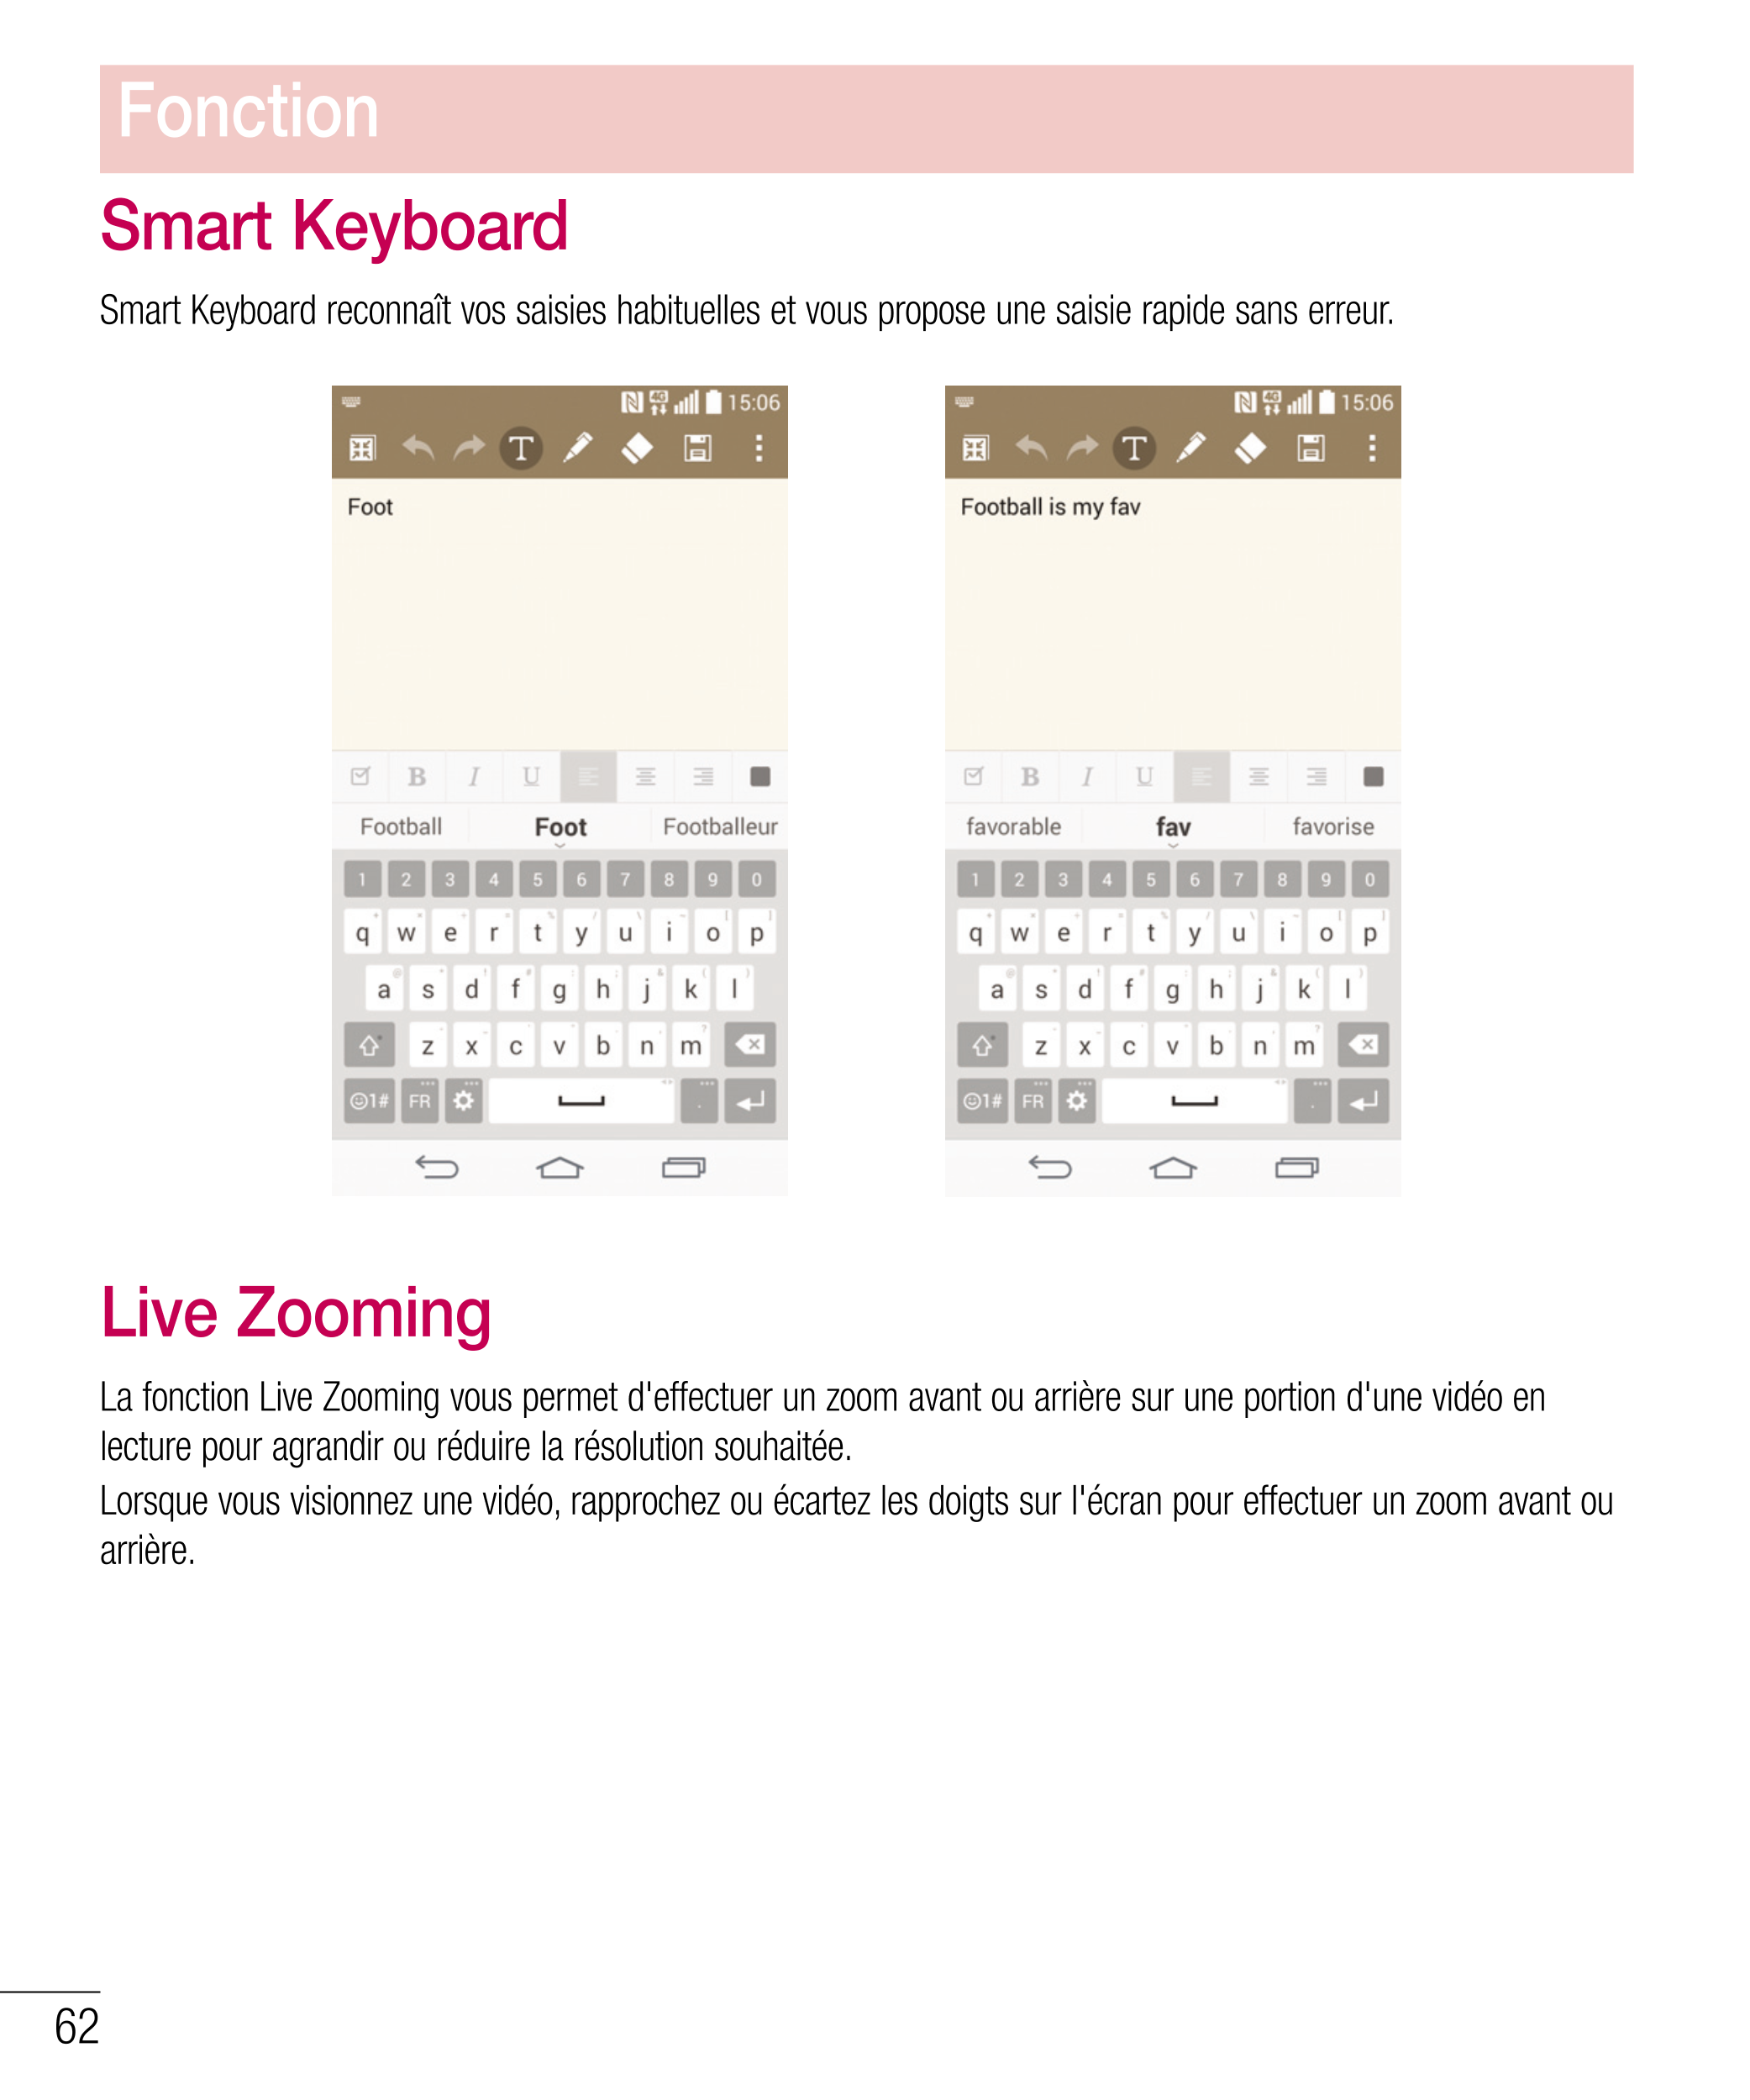 Fonction
Smart Keyboard
Smart Keyboard reconnaît vos saisies habituelles et vous propose une saisie rapide sans erreur.
Live Zoo